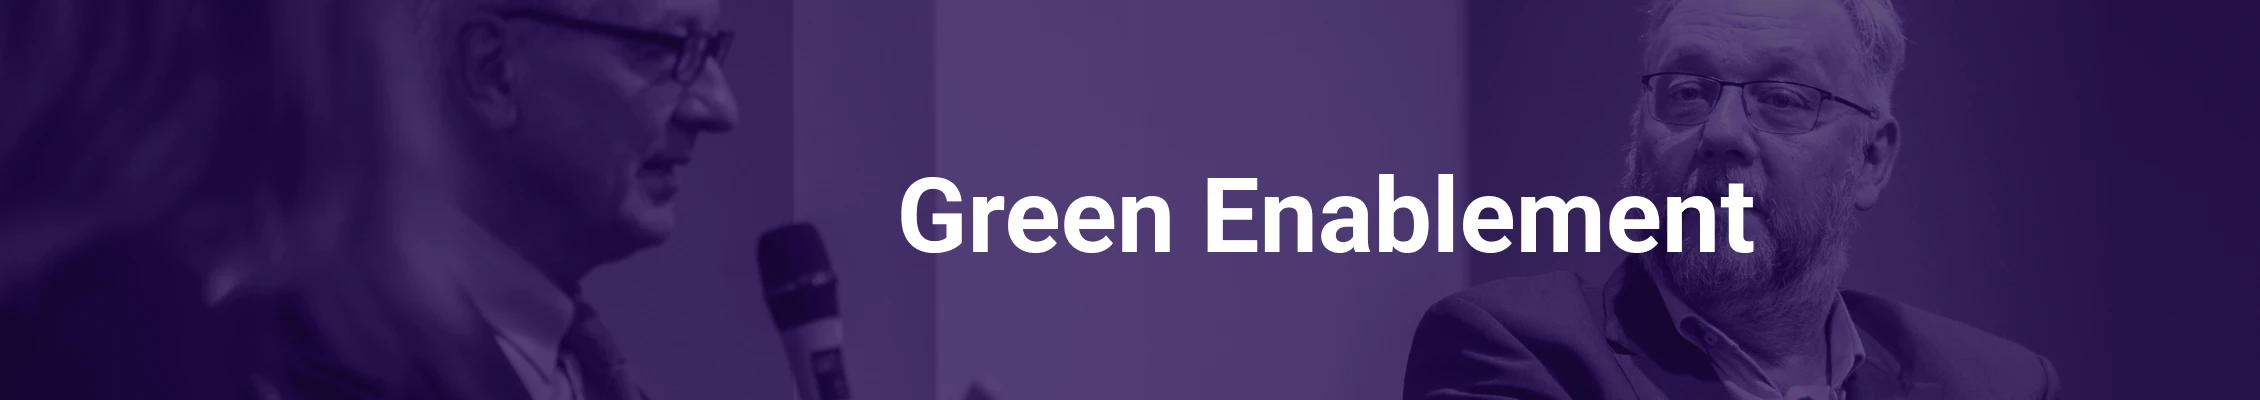 green_enablemet